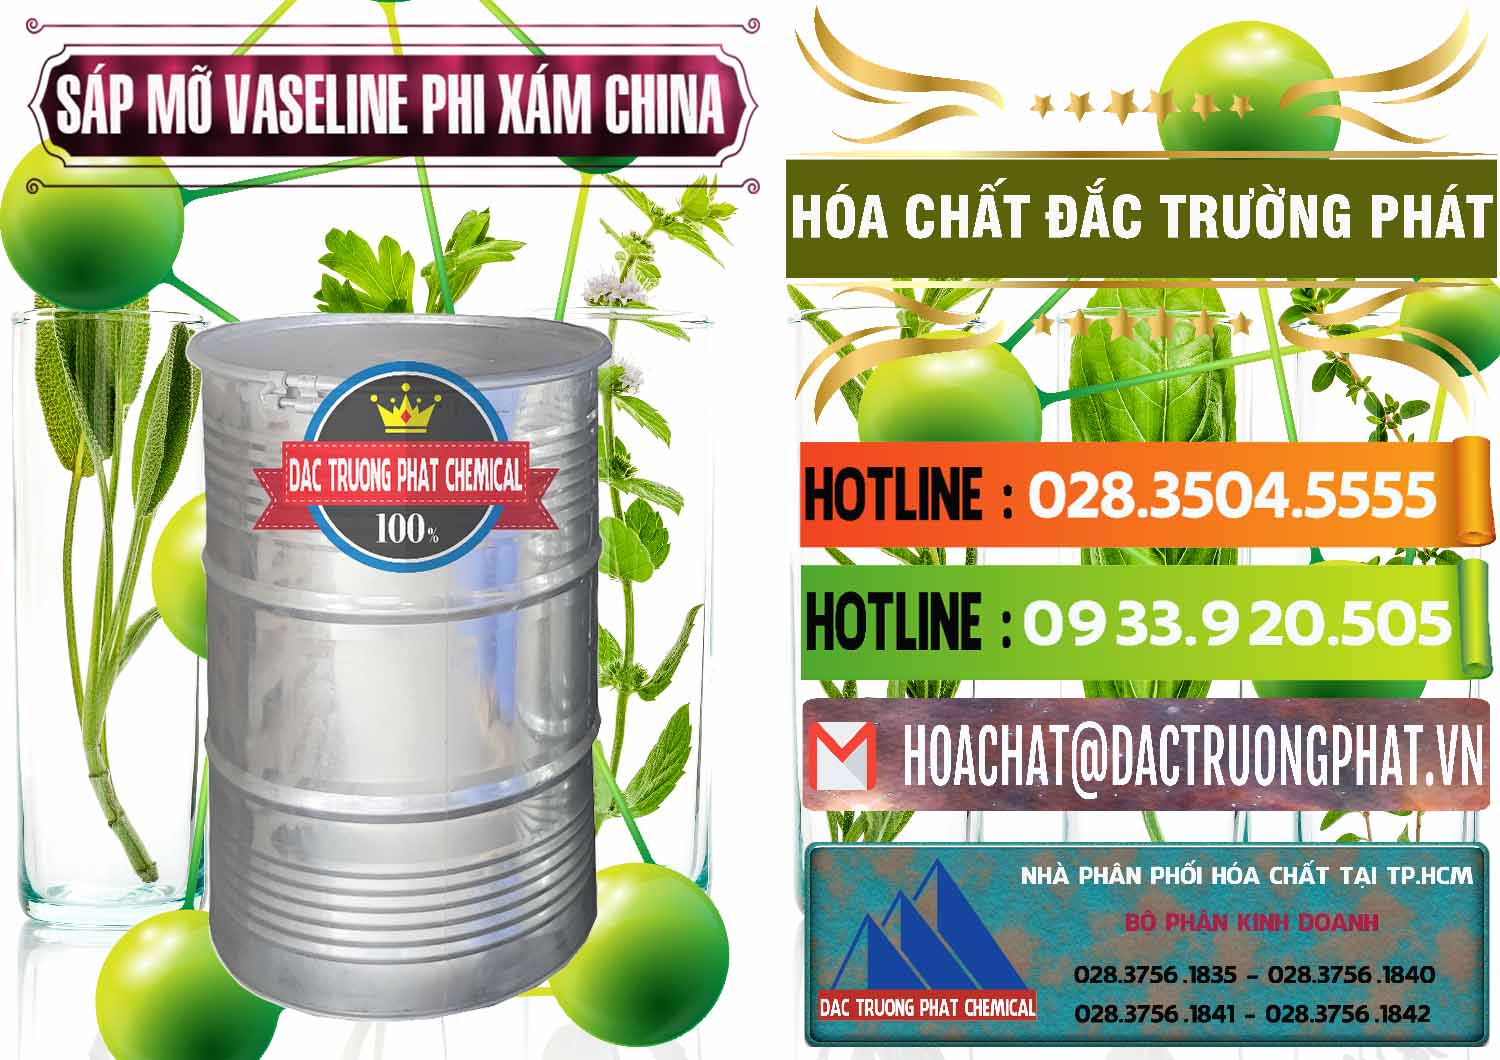 Chuyên kinh doanh và bán Sáp Mỡ Vaseline Phi Xám Trung Quốc China - 0291 - Cty chuyên cung cấp và kinh doanh hóa chất tại TP.HCM - cungcaphoachat.com.vn